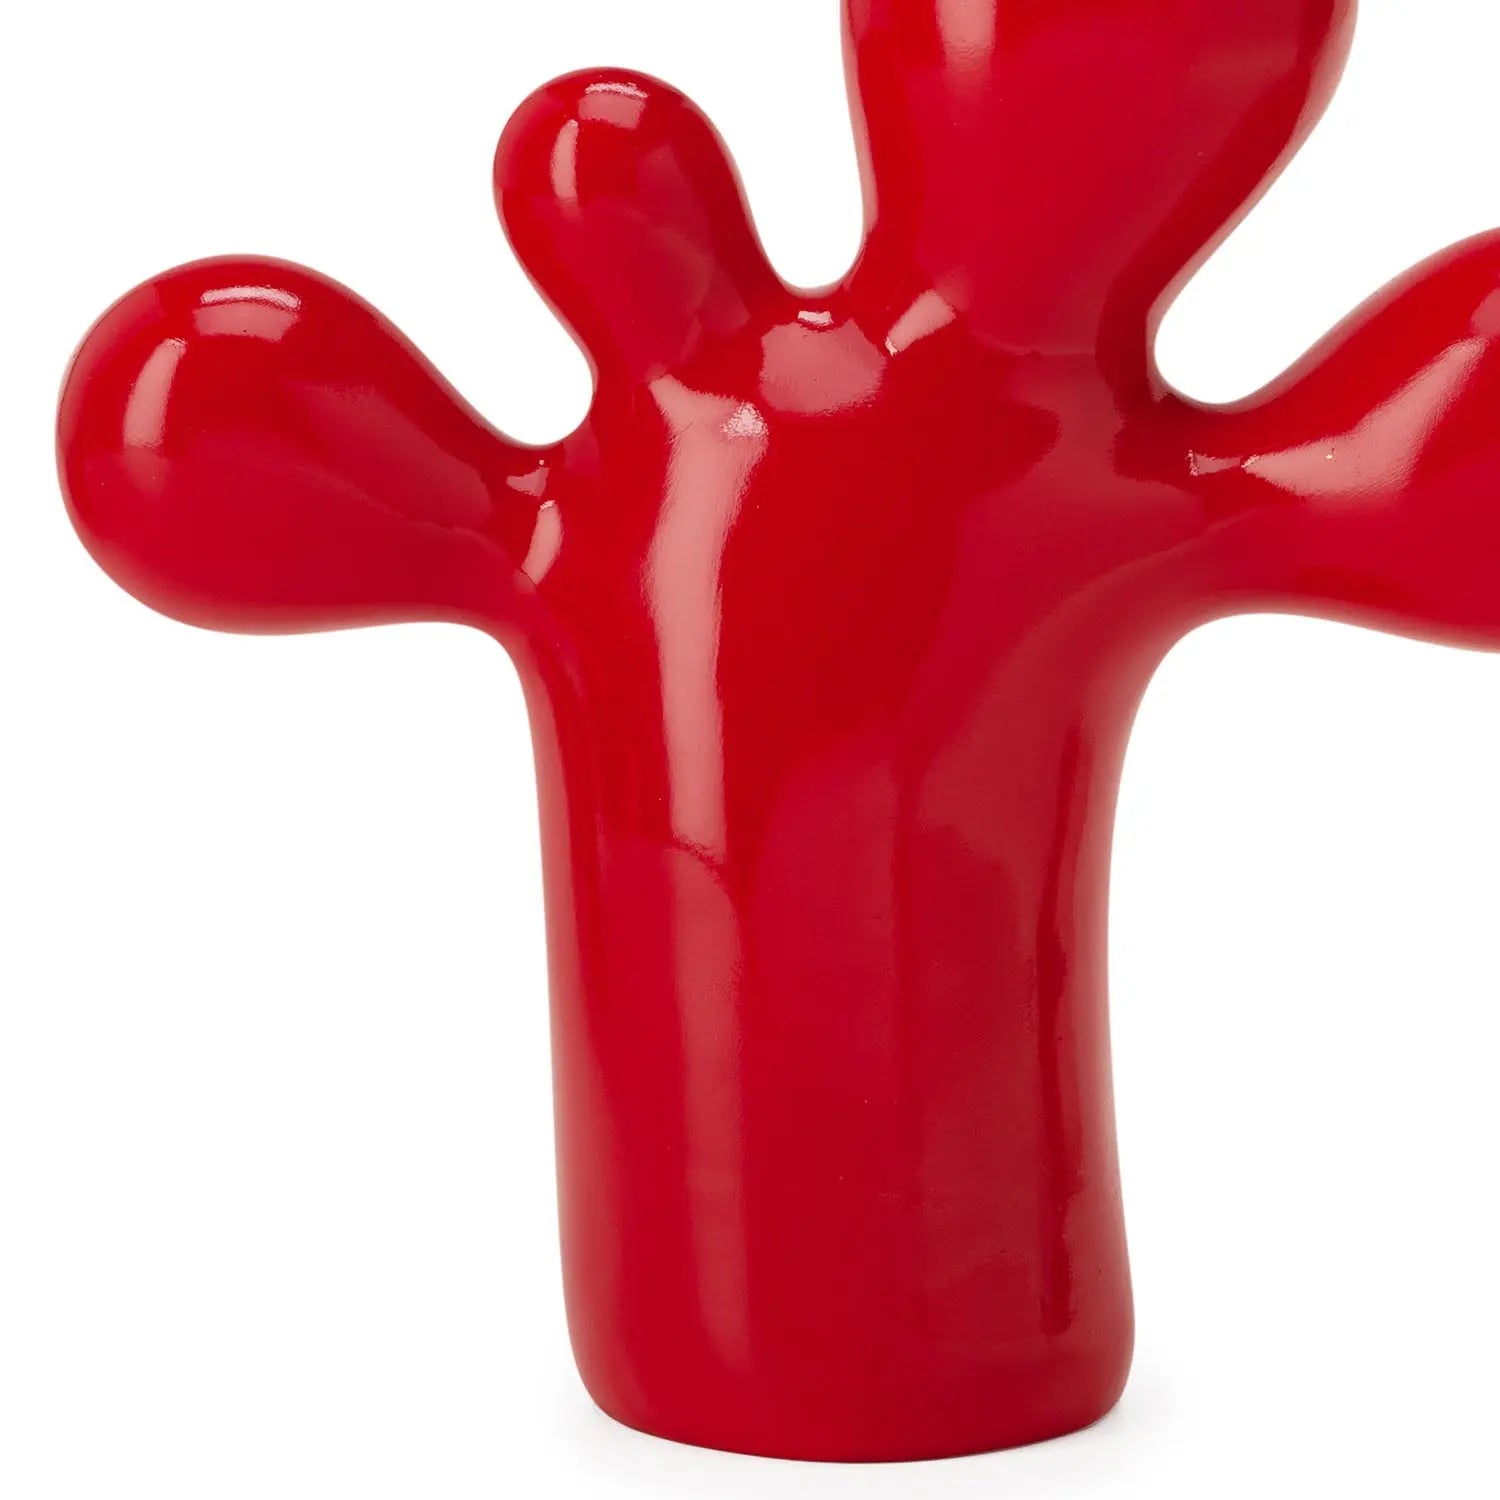 Homedock Escultura Flip 23,5 cm – Vermelho Mart